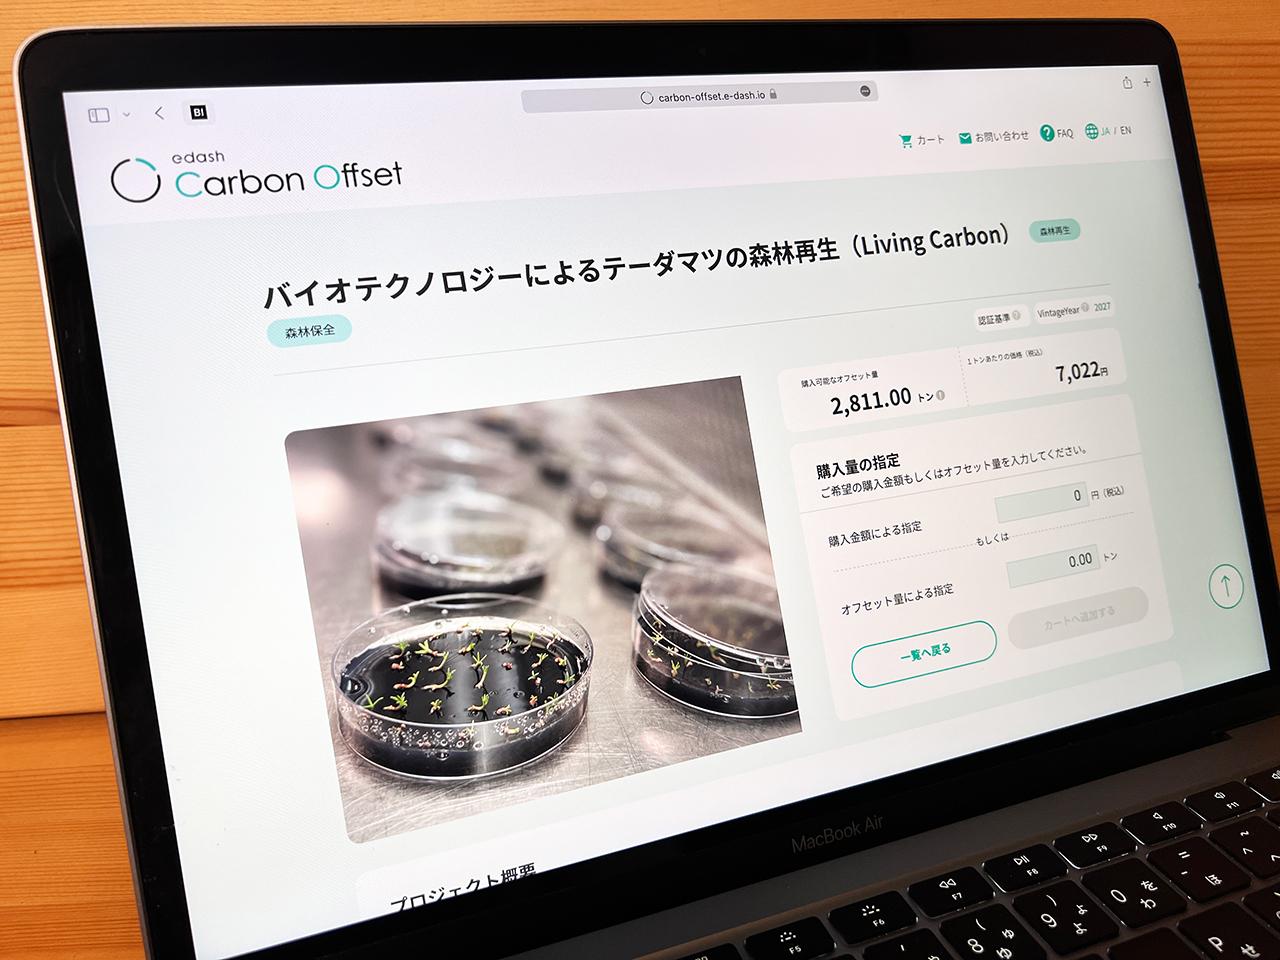 edash carbon marketplace mitsui bussan